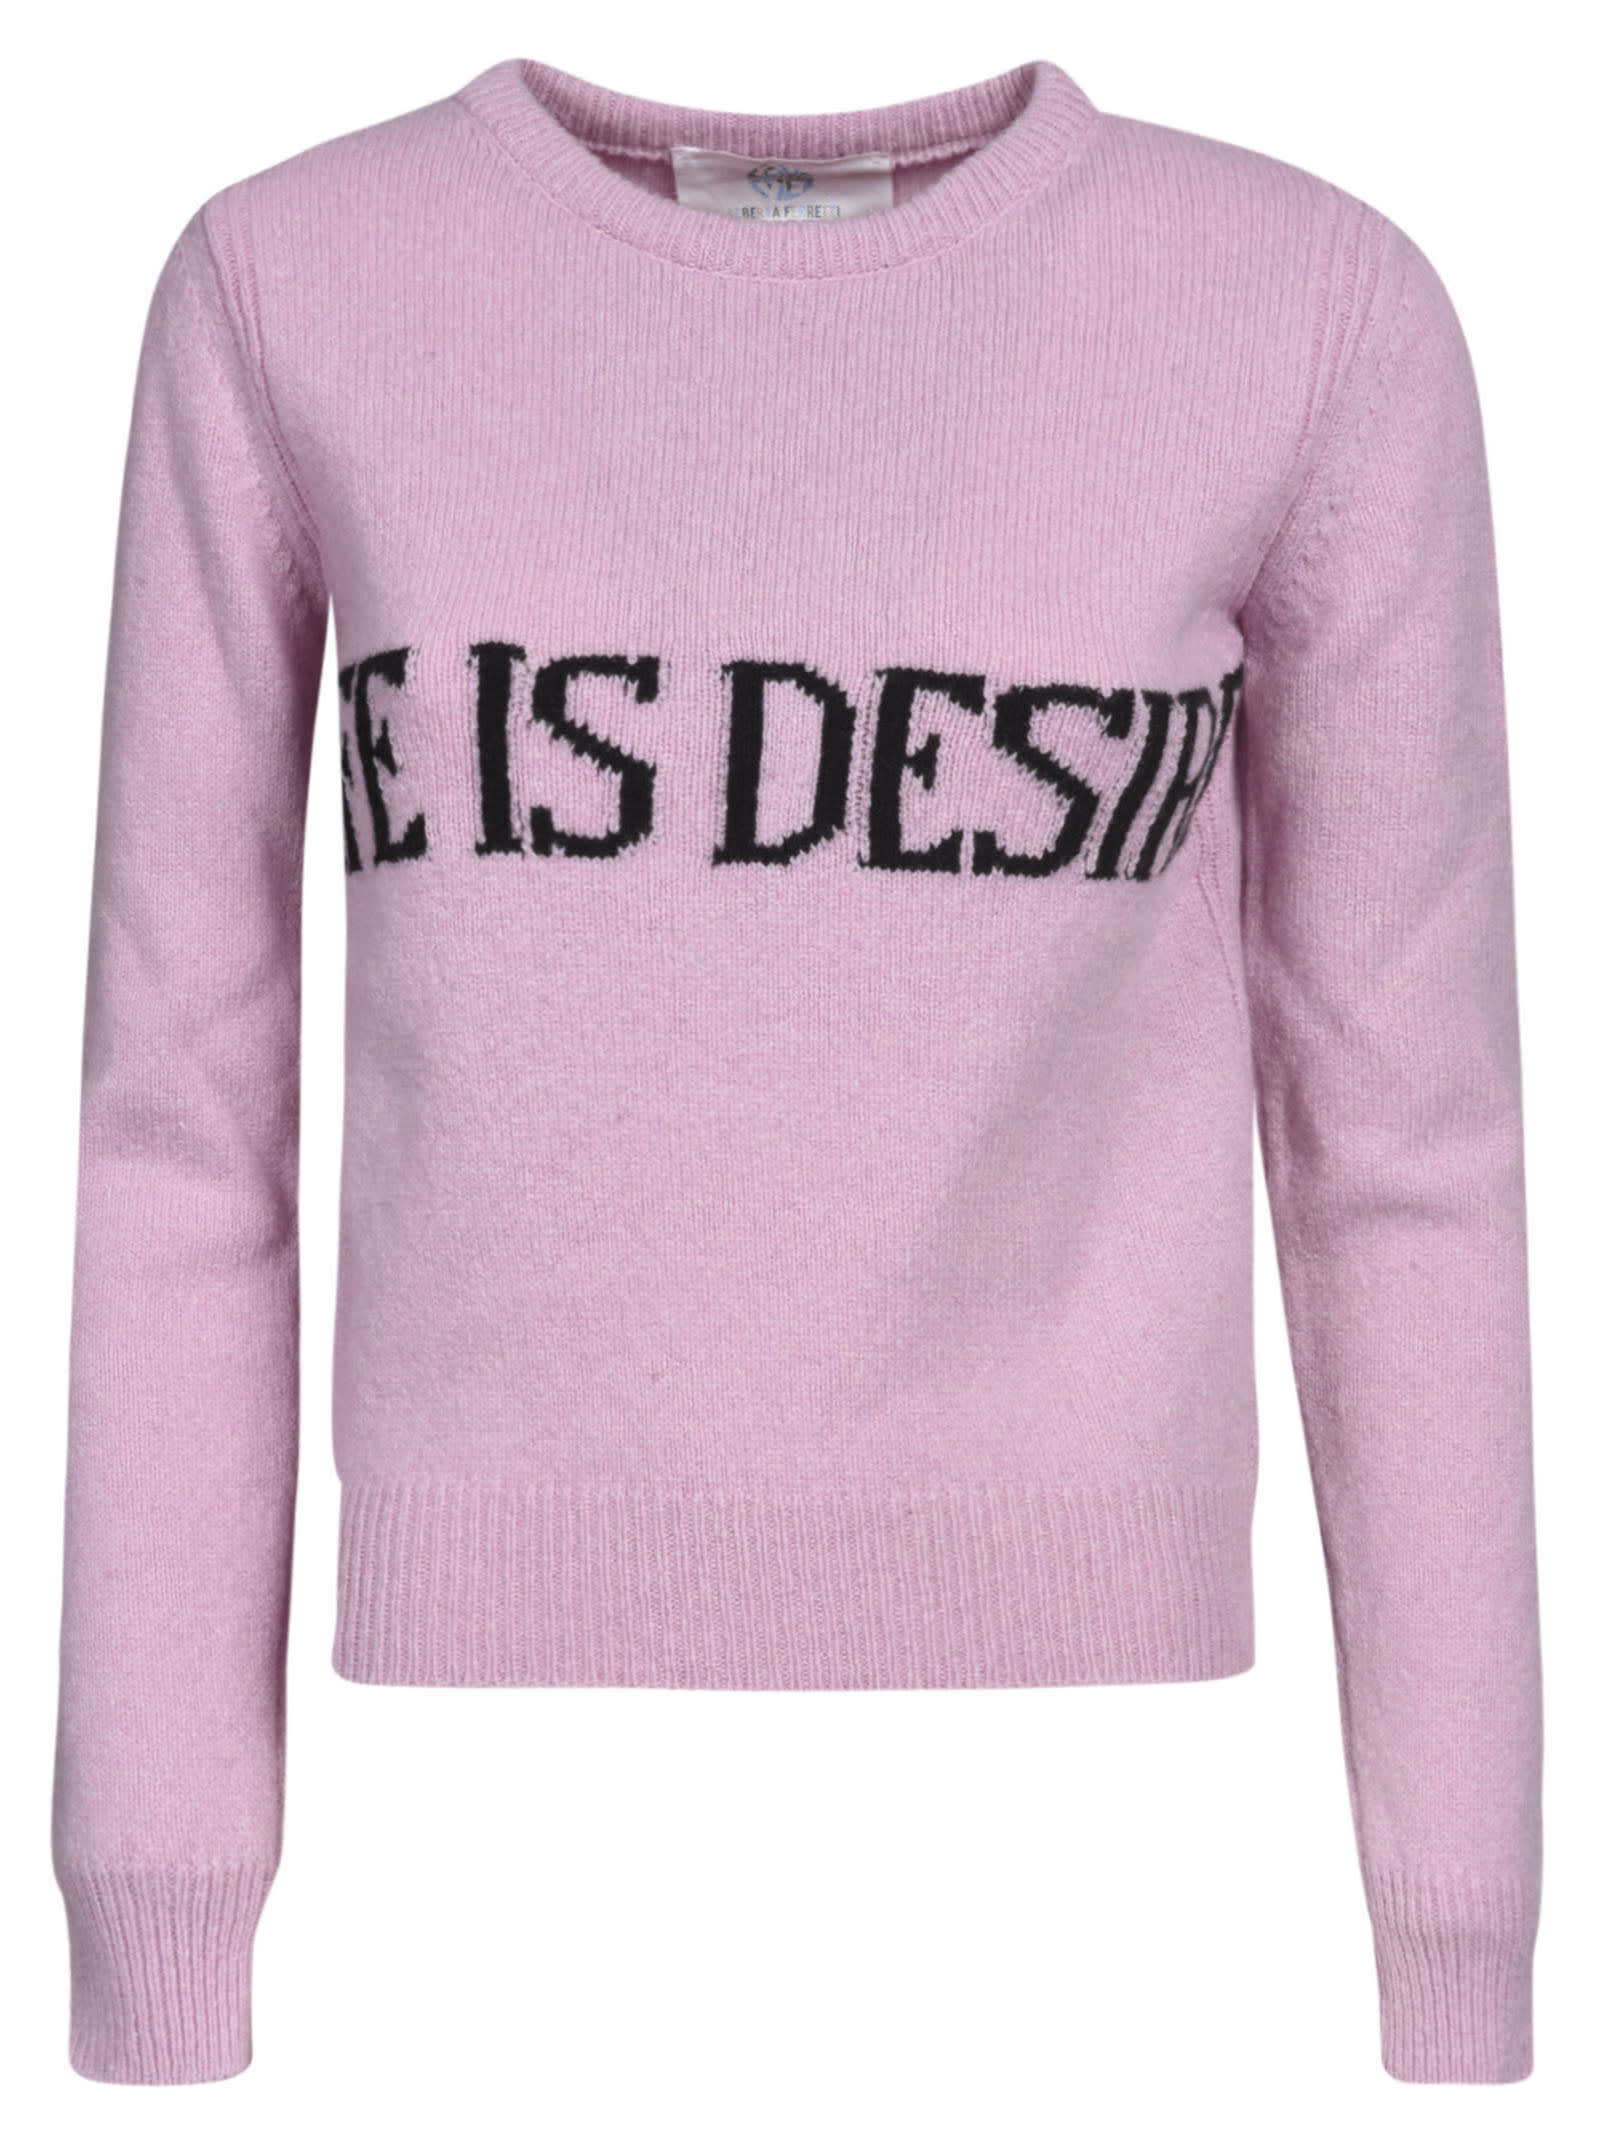 Alberta Ferretti Life Is Desire Cropped Sweater